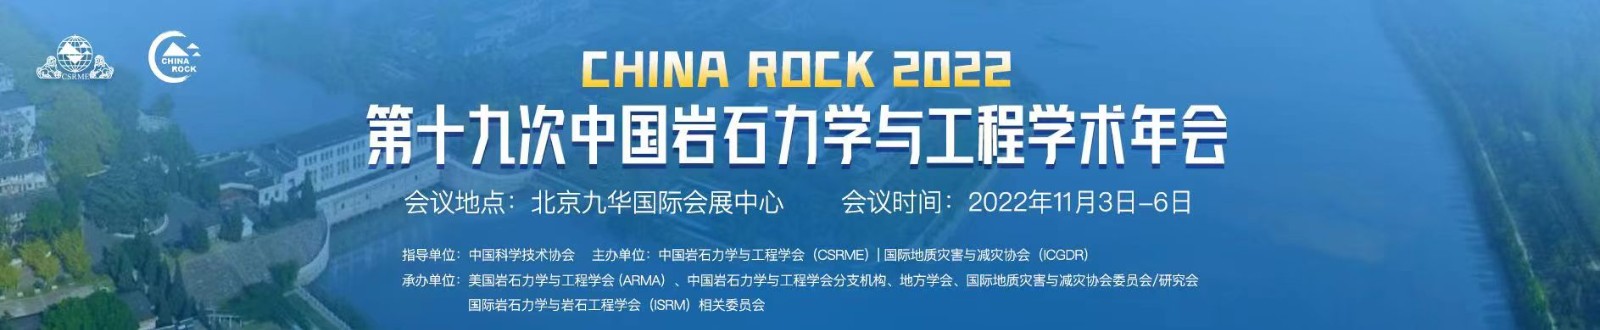 china rock 2022